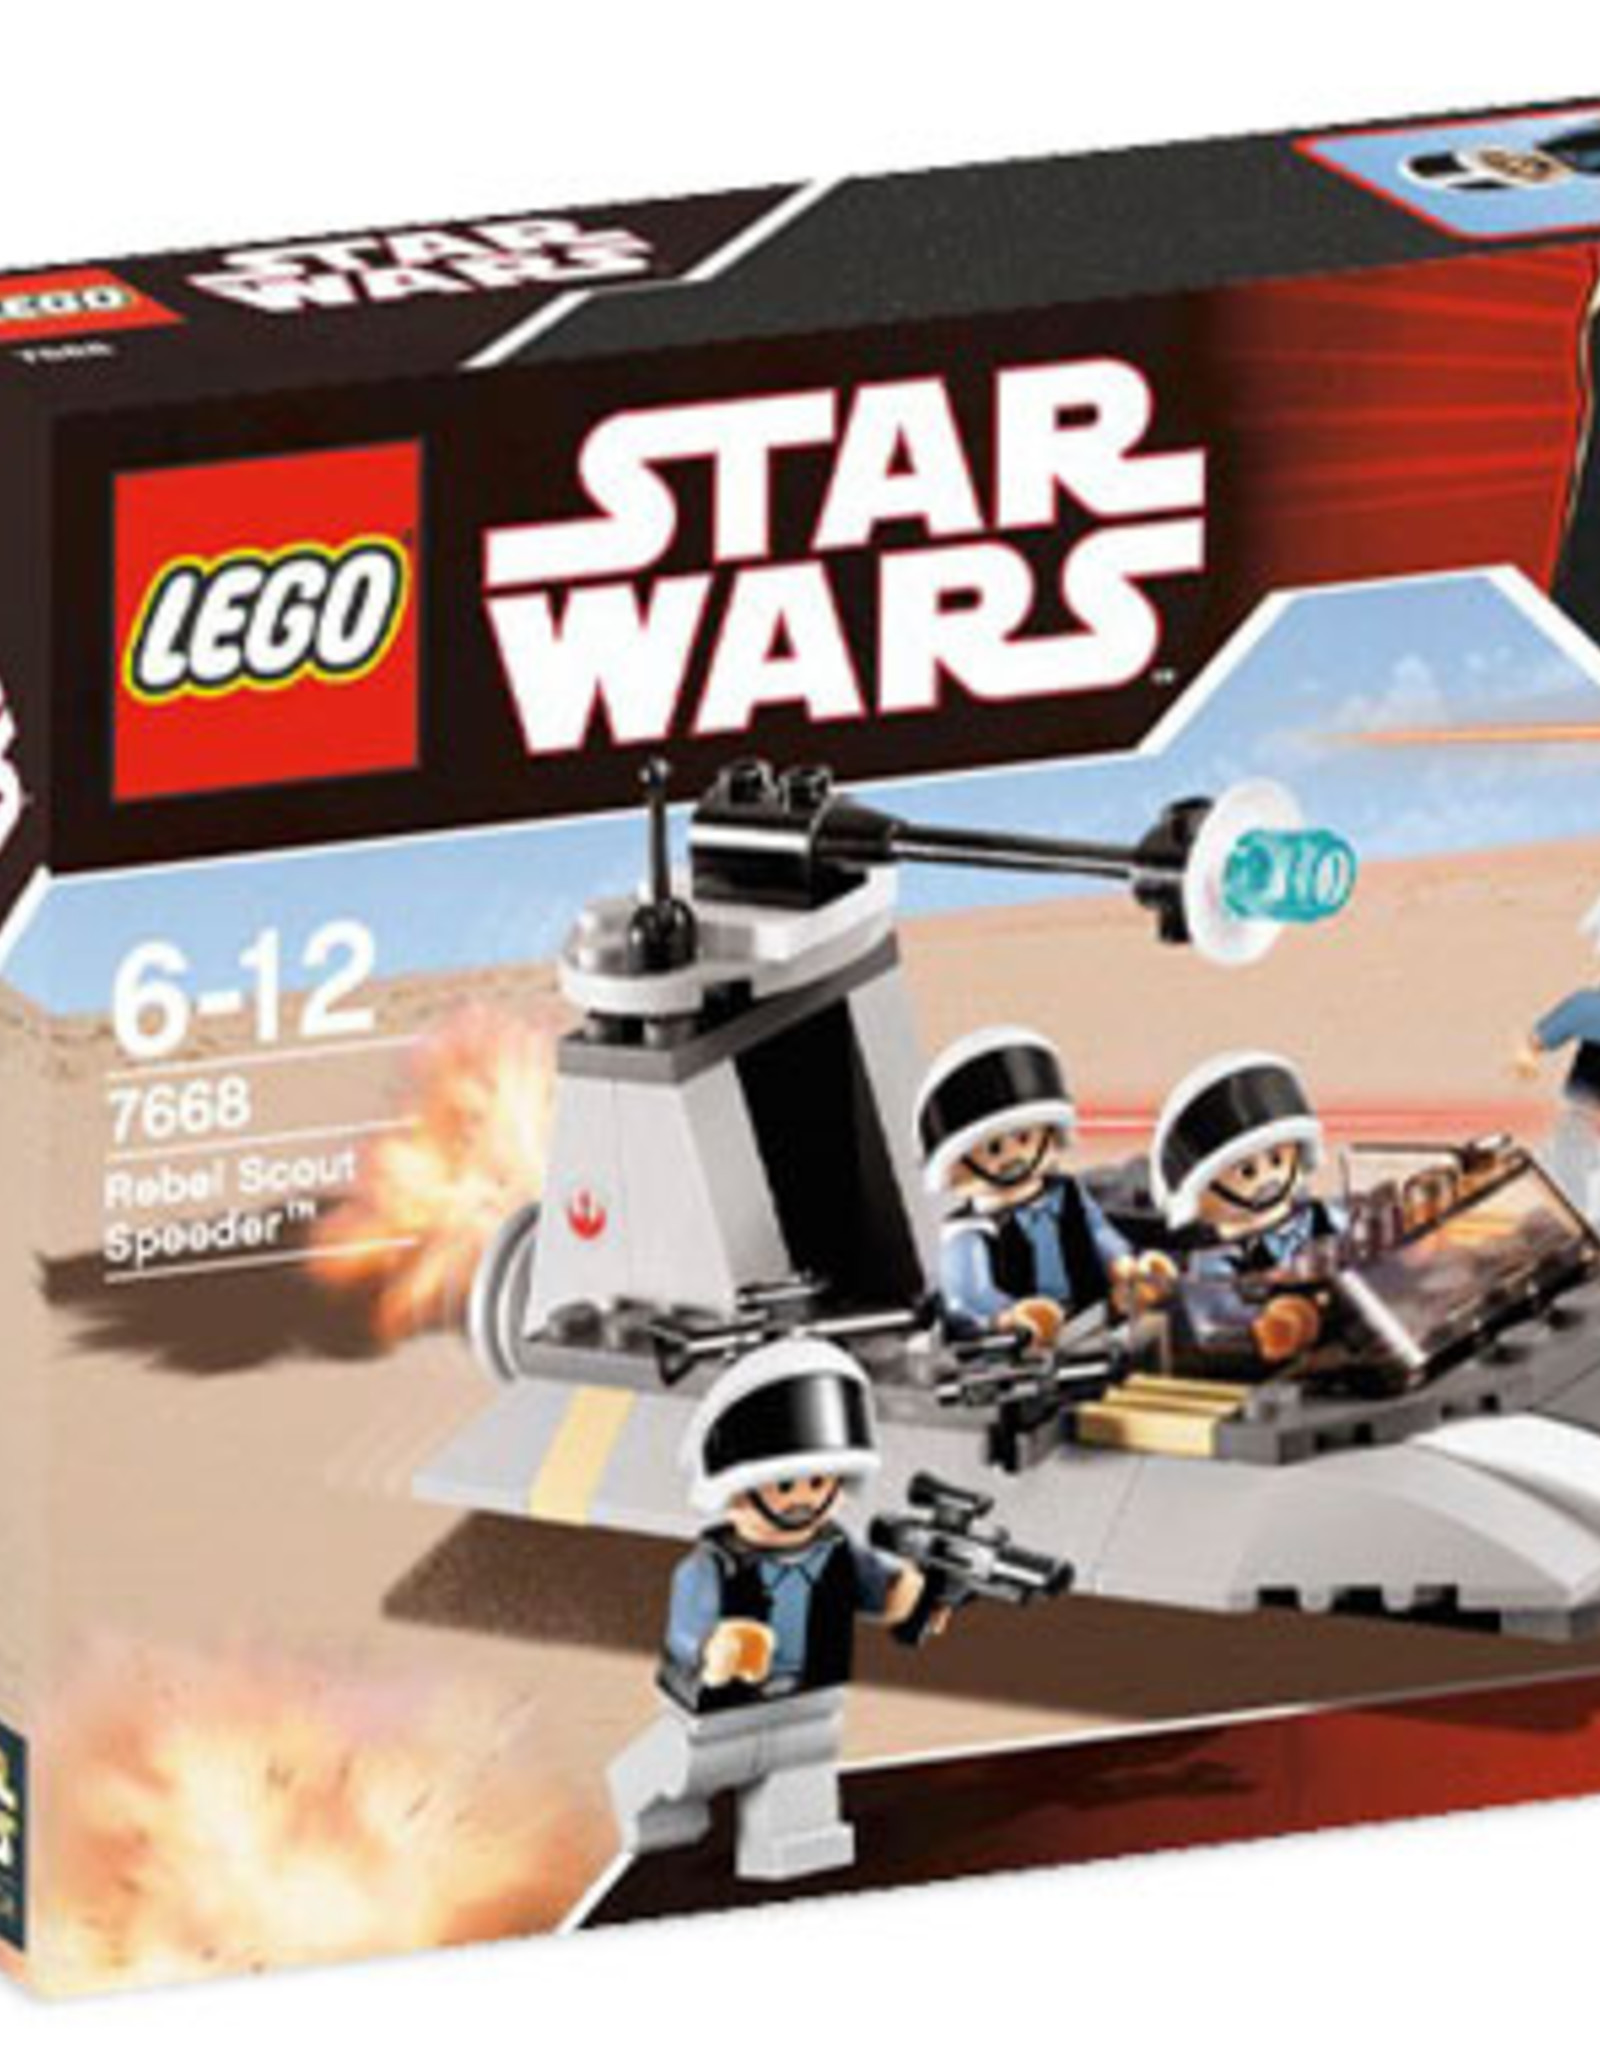 LEGO LEGO 7668 Rebel Scout Speeder STAR WARS